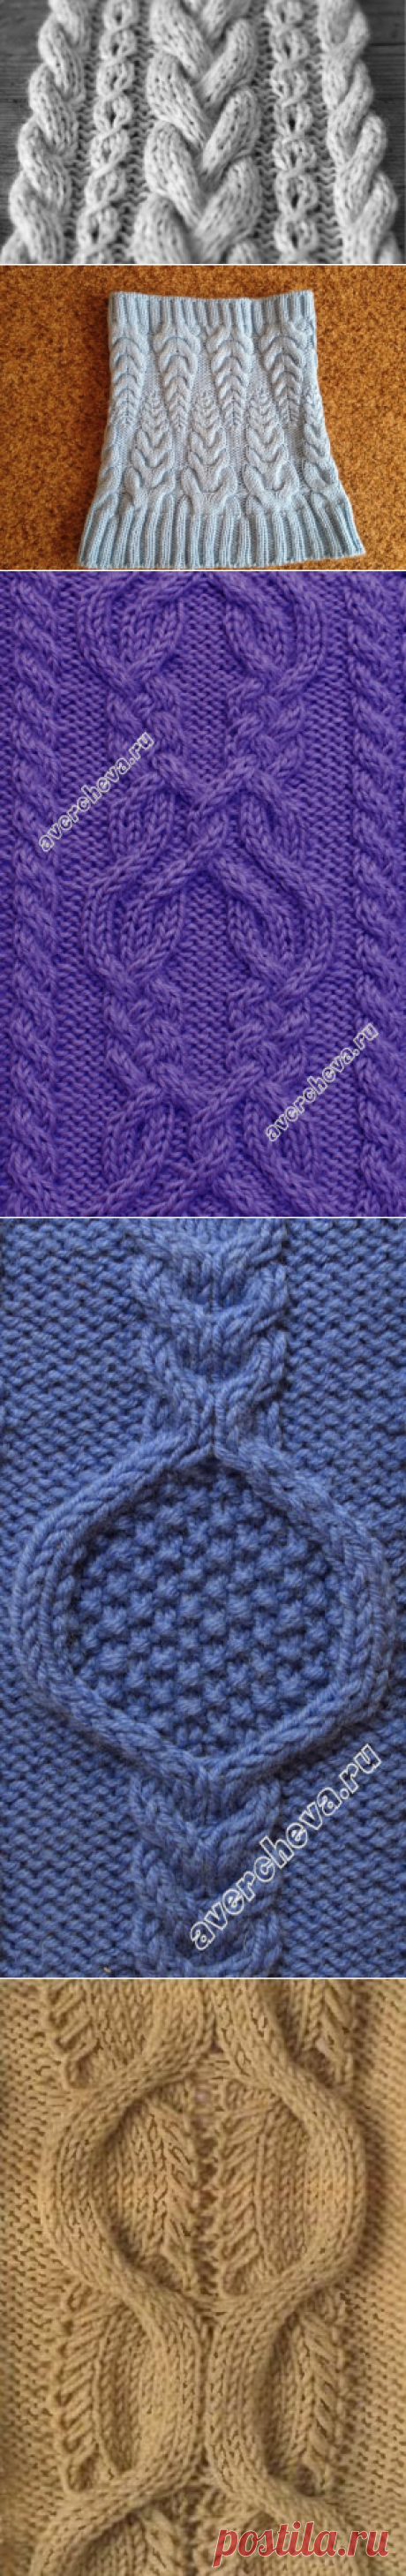 Как связать шарф снуд спицами + подборка узоров для их вязания